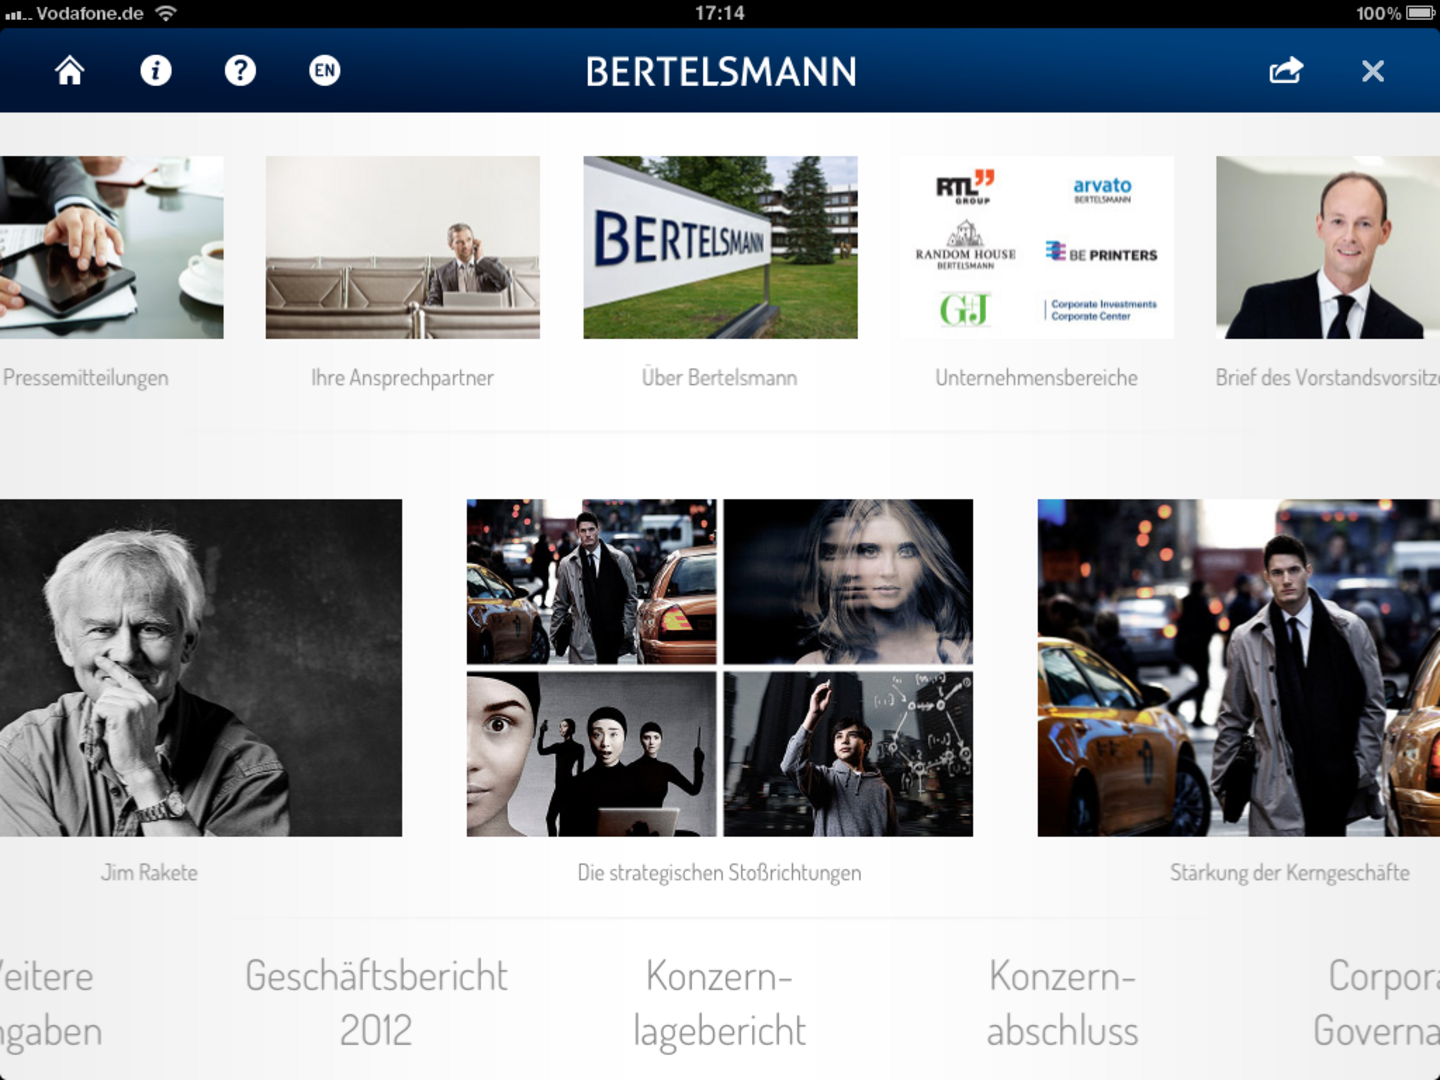 Bertelsmann GeschäftsberichtsApp 2012